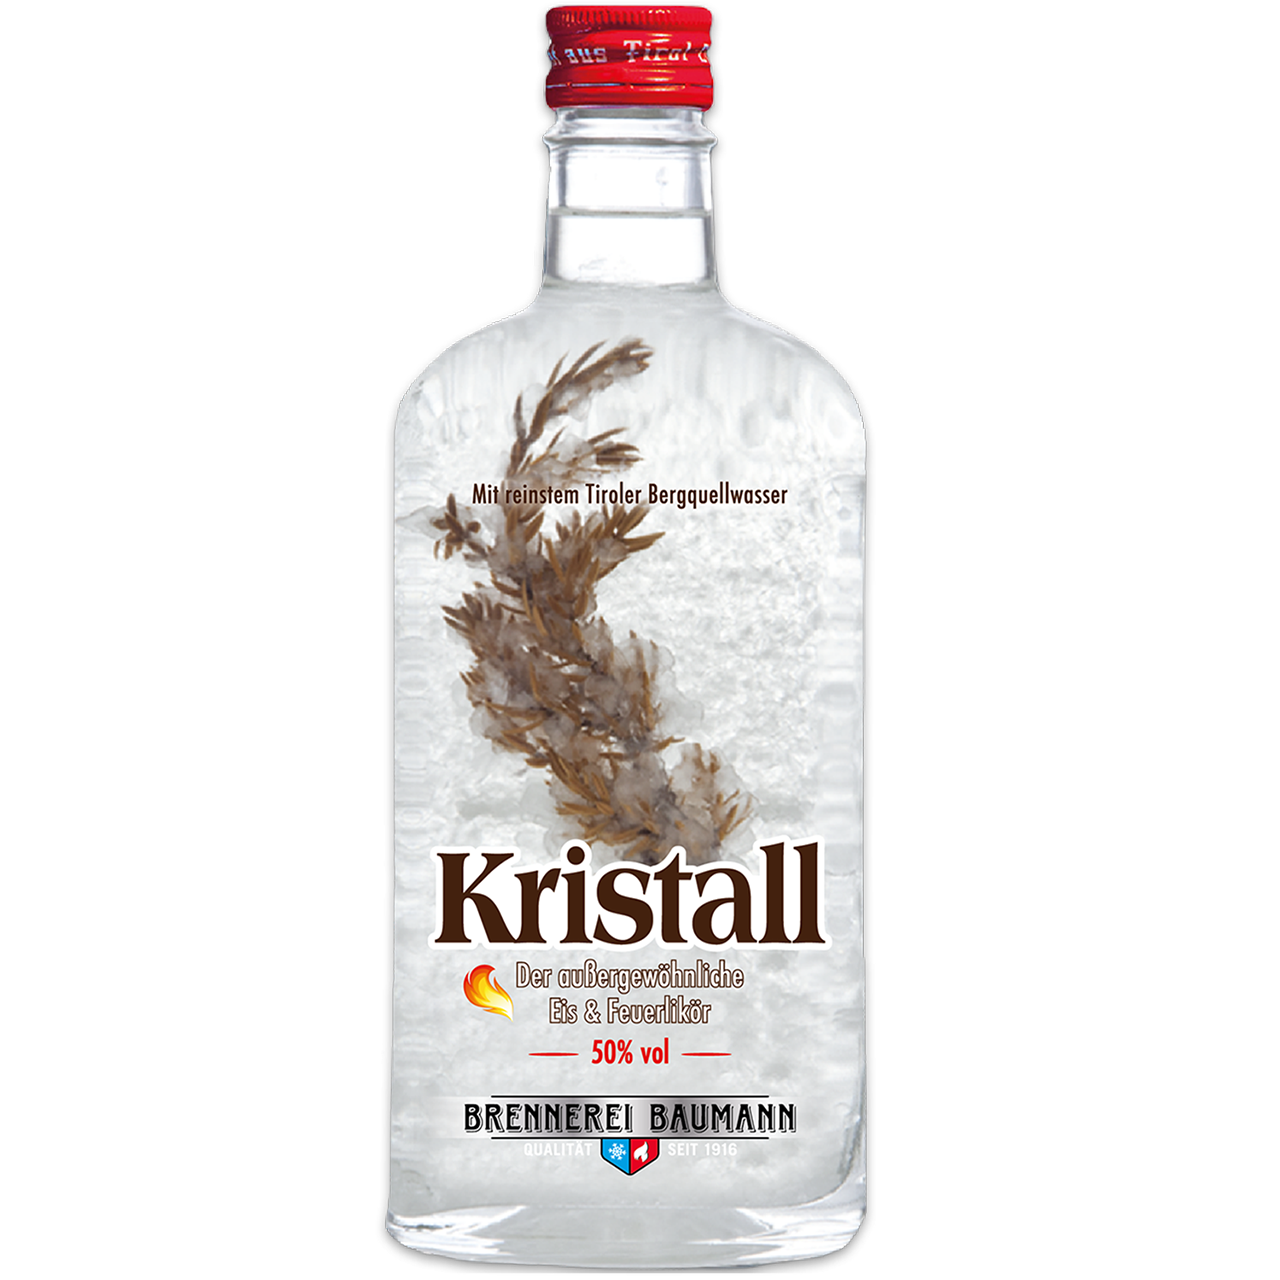 Kristall Liqueur in 500ml bottle from Brennerei Baumann